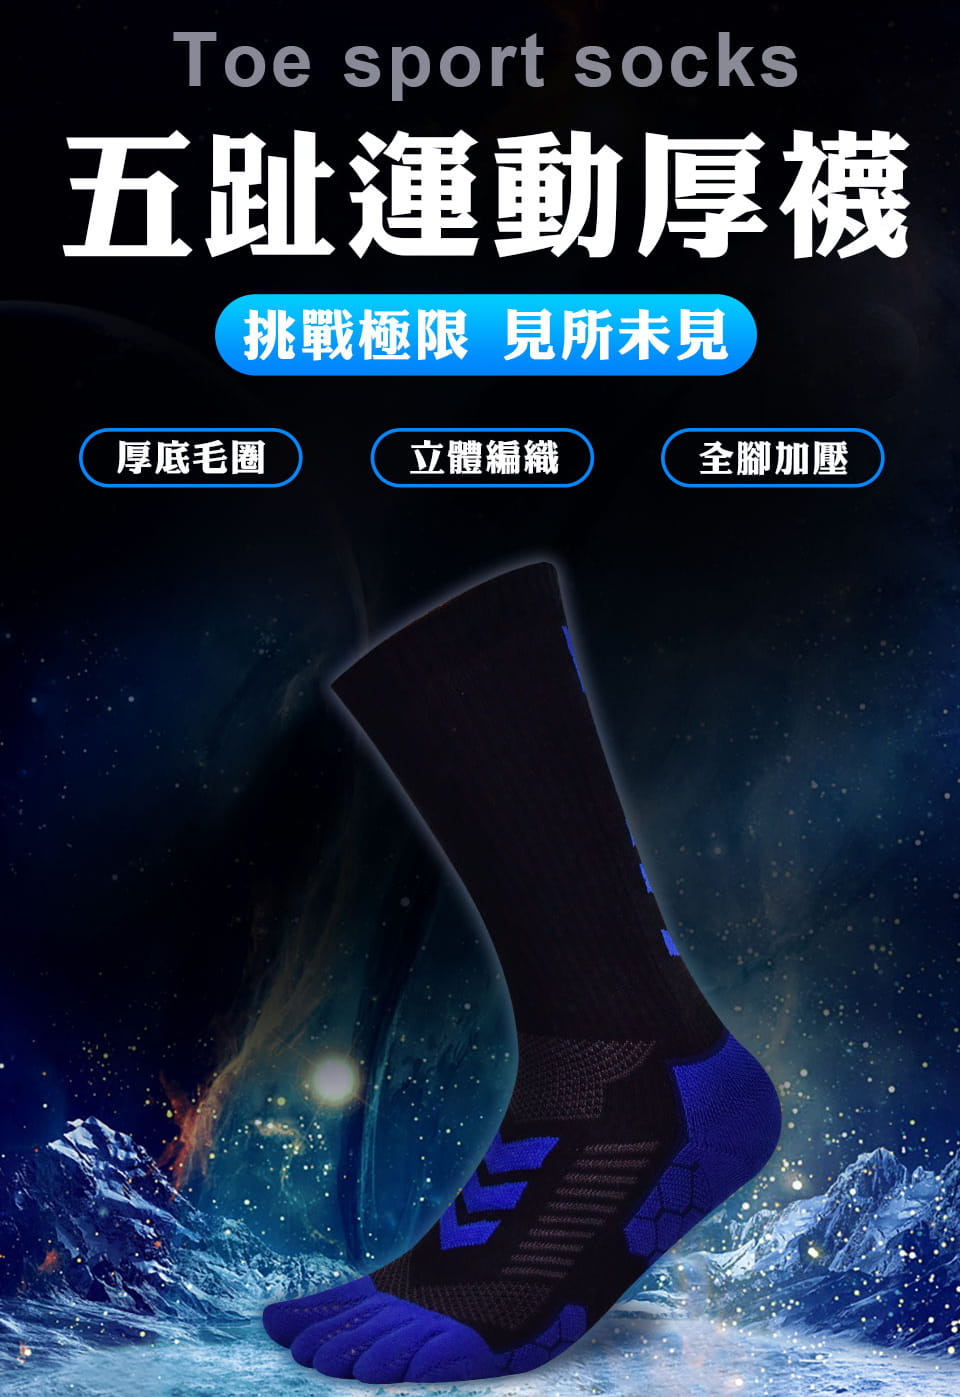 【力美特機能襪】五趾運動厚襪(黑藍) 2